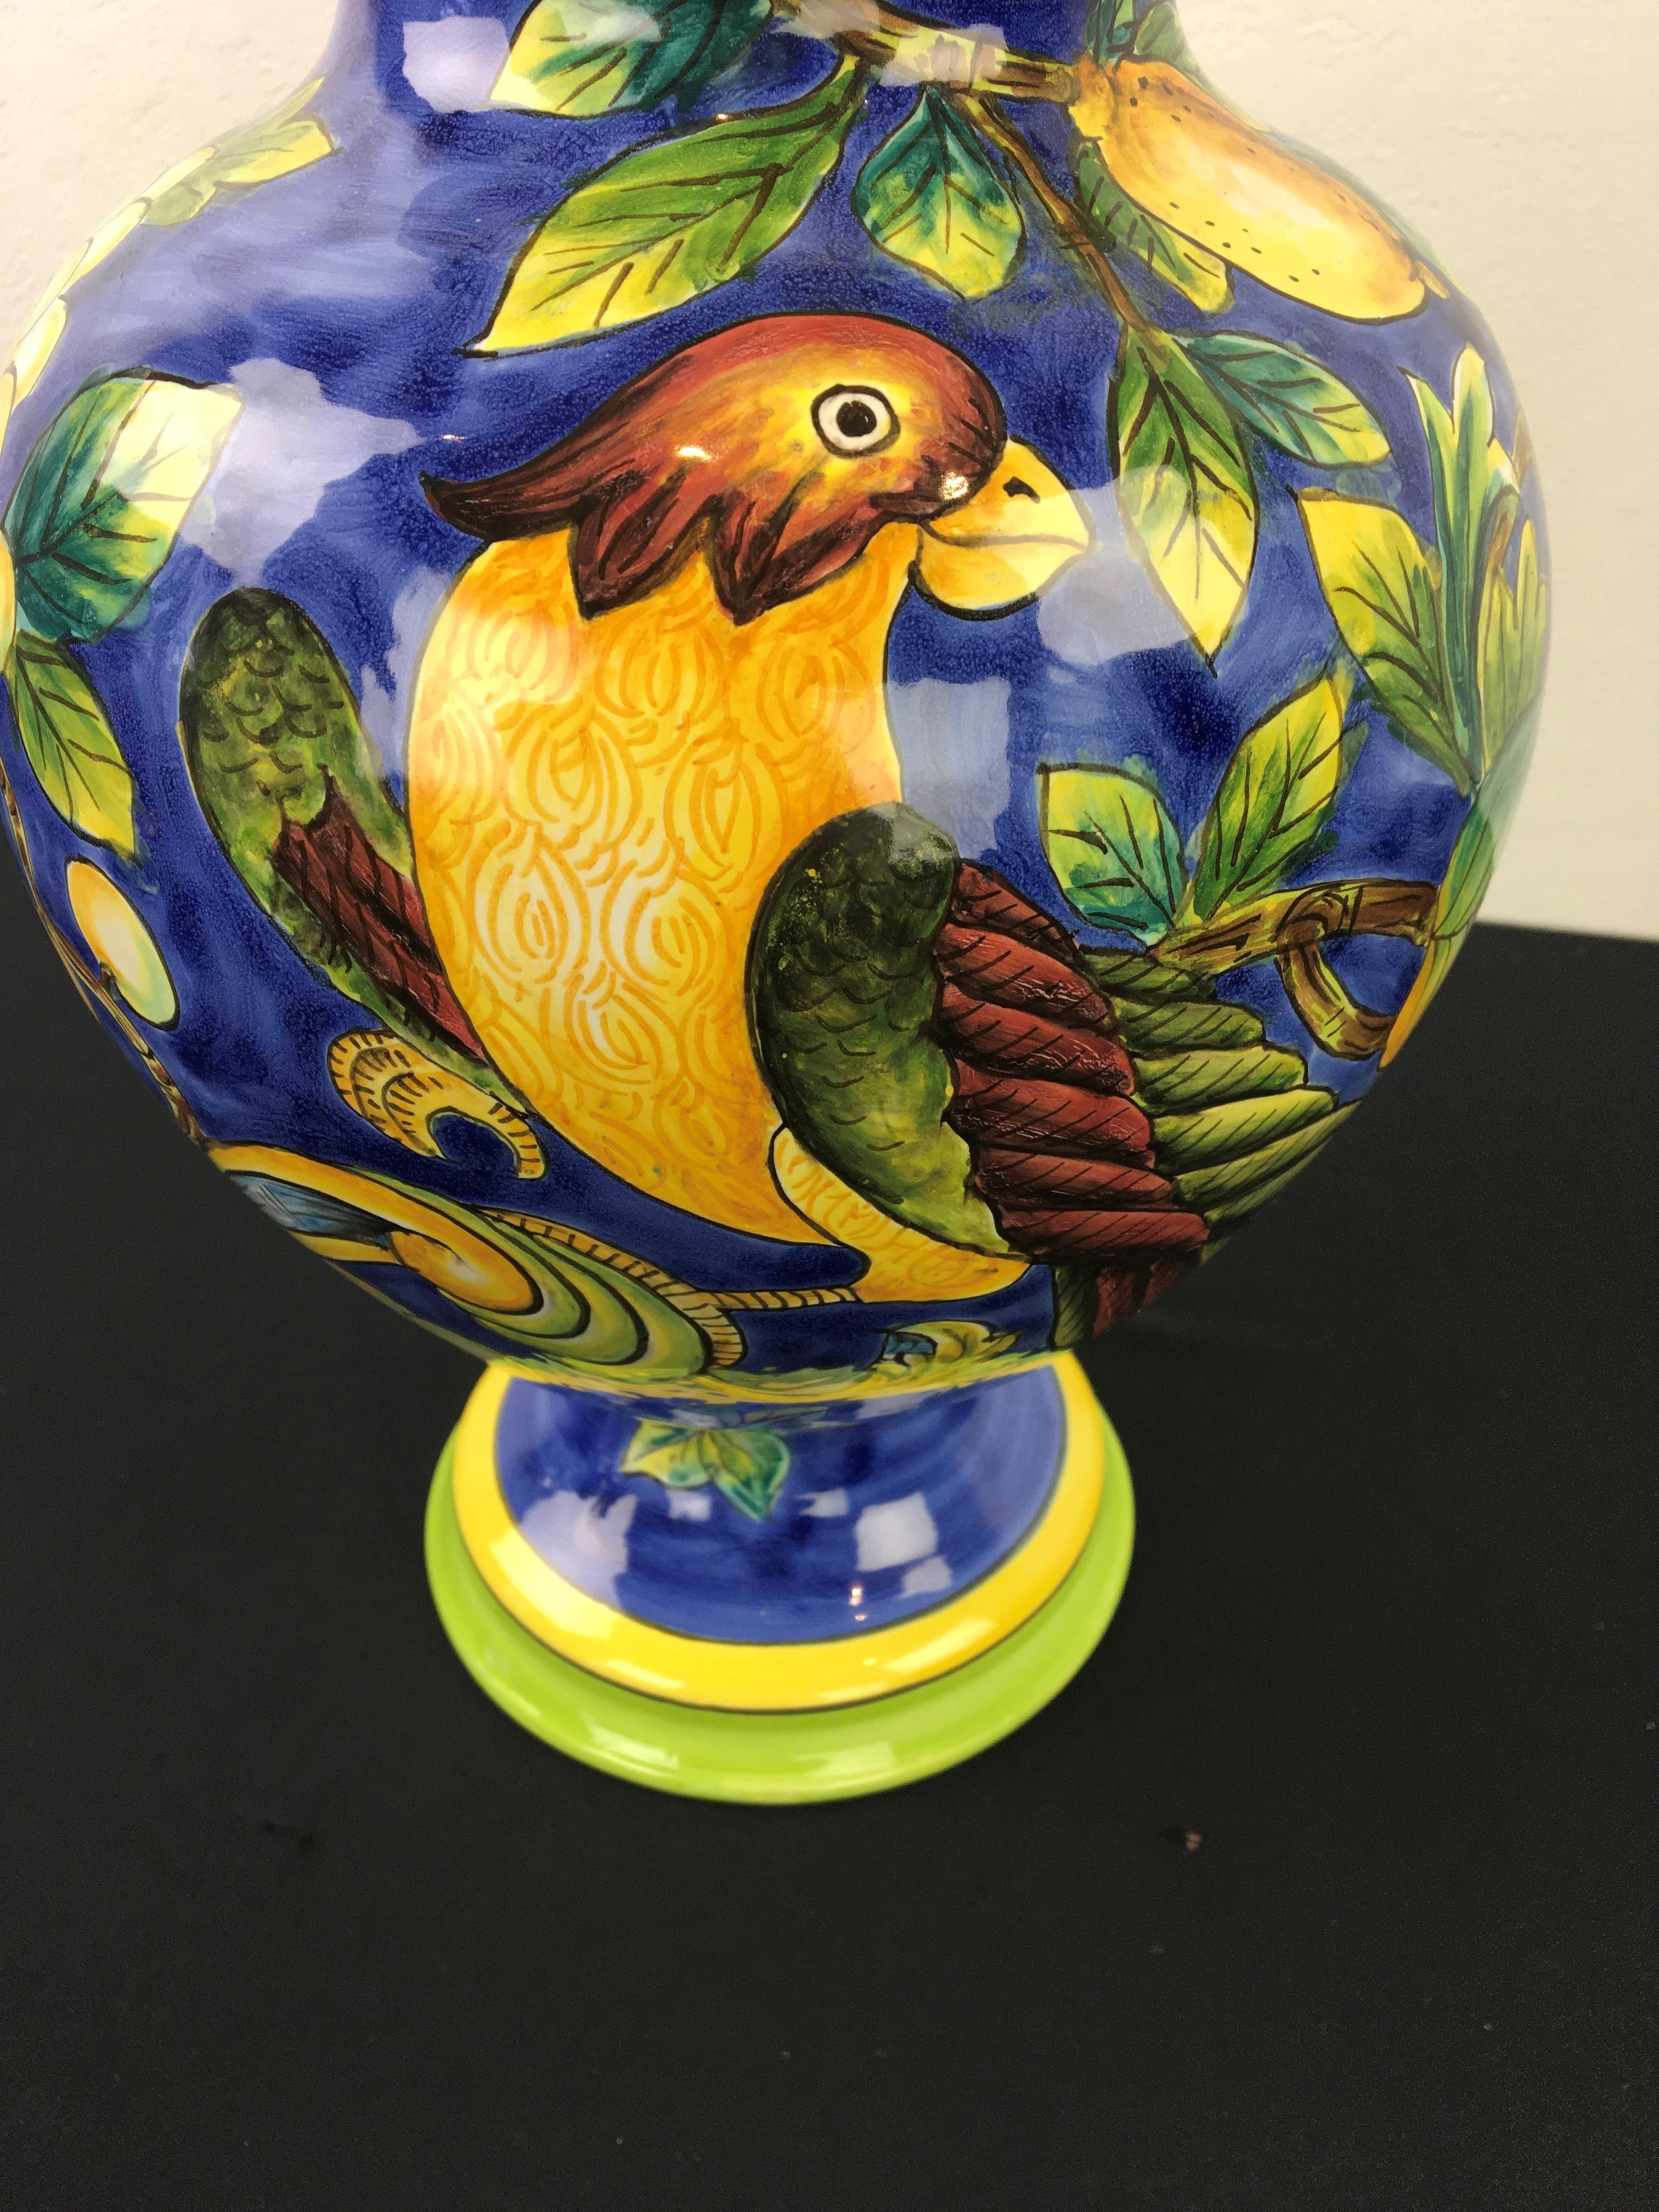 Bocal bleu avec un oiseau et beaucoup de citrons, de fleurs et de feuilles.
Un pot en céramique avec couvercle avec un bel oiseau dans un citronnier. 
Belle jarre bleue émaillée avec couvercle, pot avec couvercle, urne. 
Design méditerranéen -